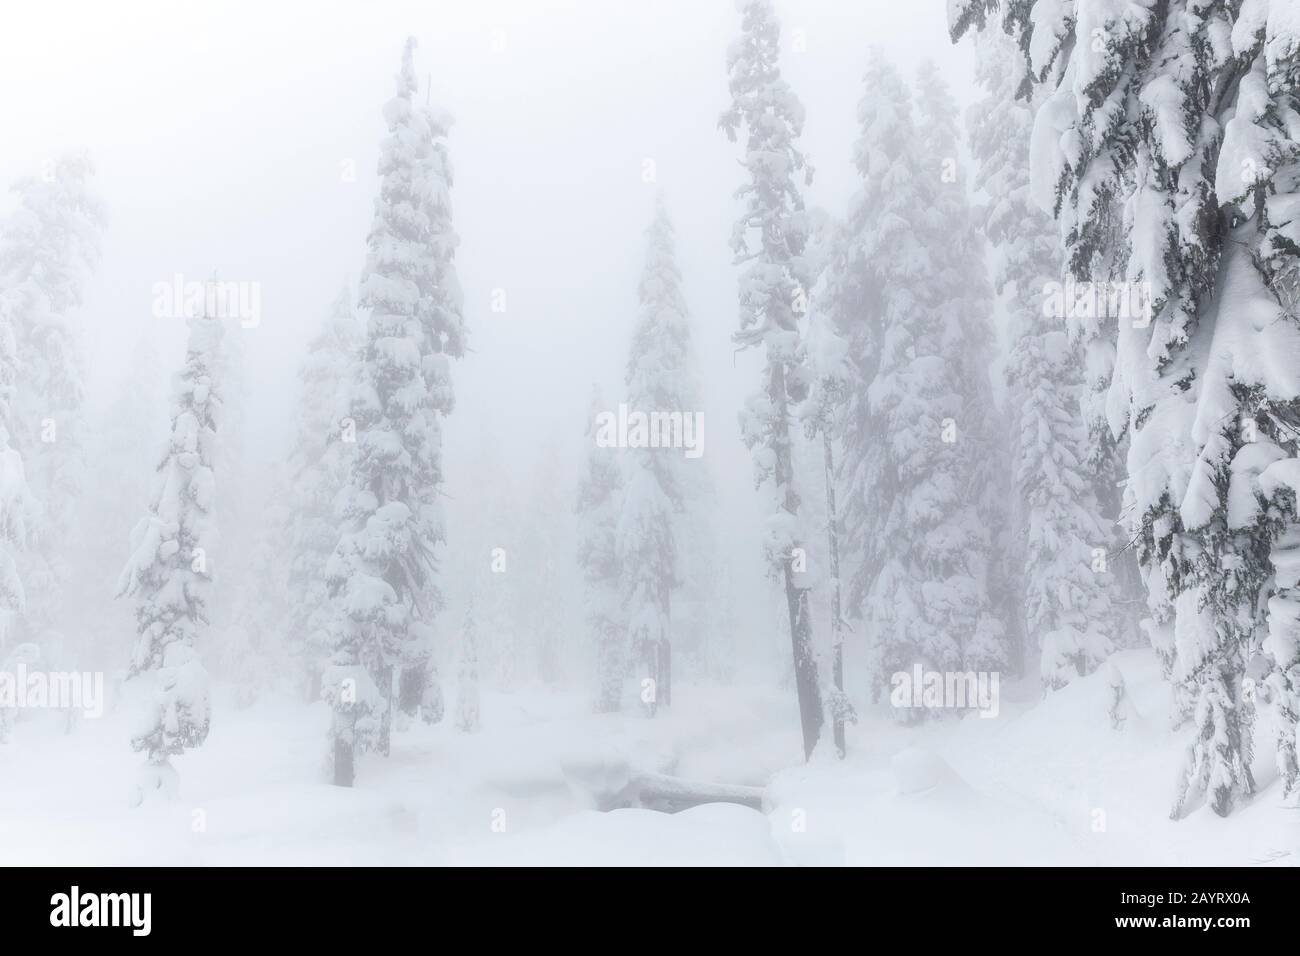 WA17432-00...WASHINGTON - Wintertag in der Alpine Lakes Wilderness, Mount Baker Snoqualmie Wilderness. Stockfoto